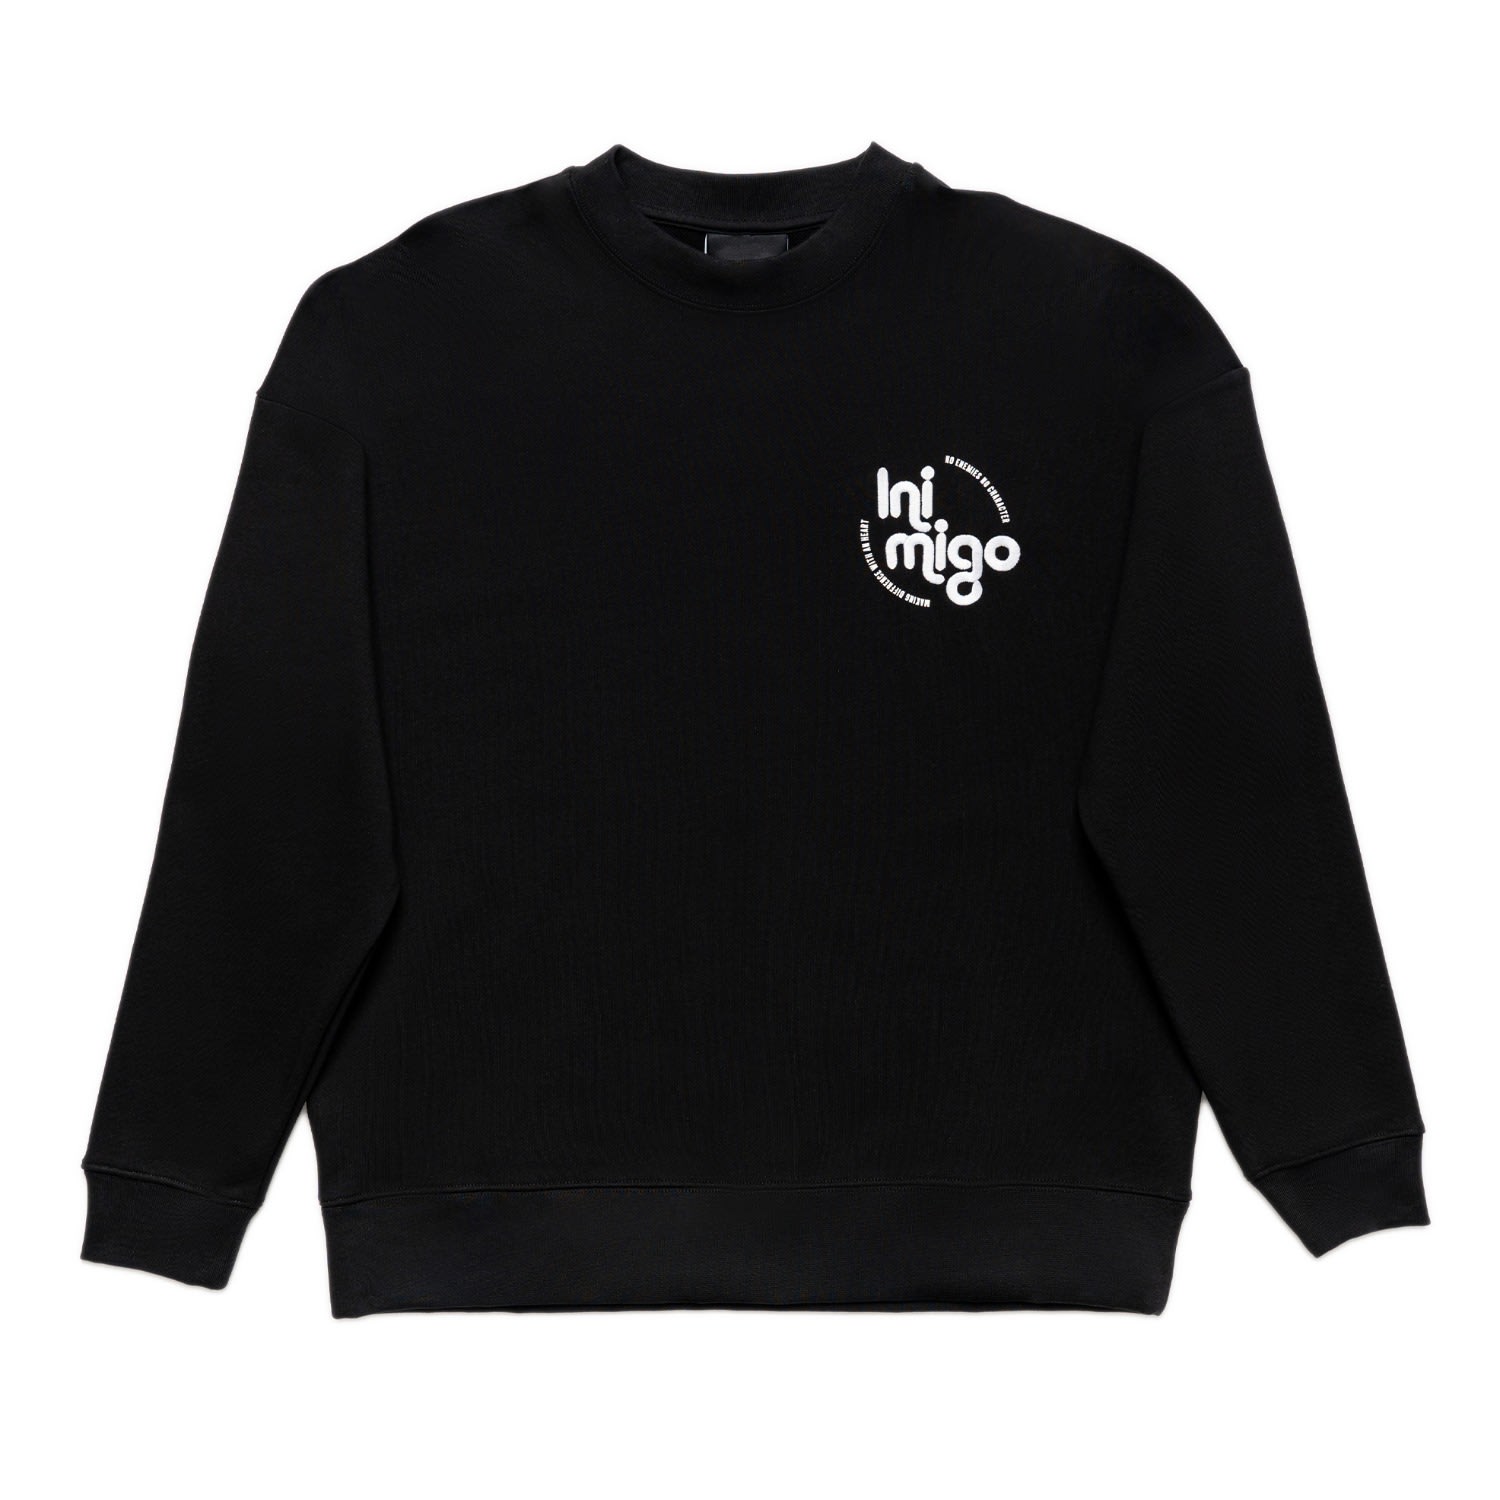 Men's Black Retro Logo Sweatshirt Small INIMIGO